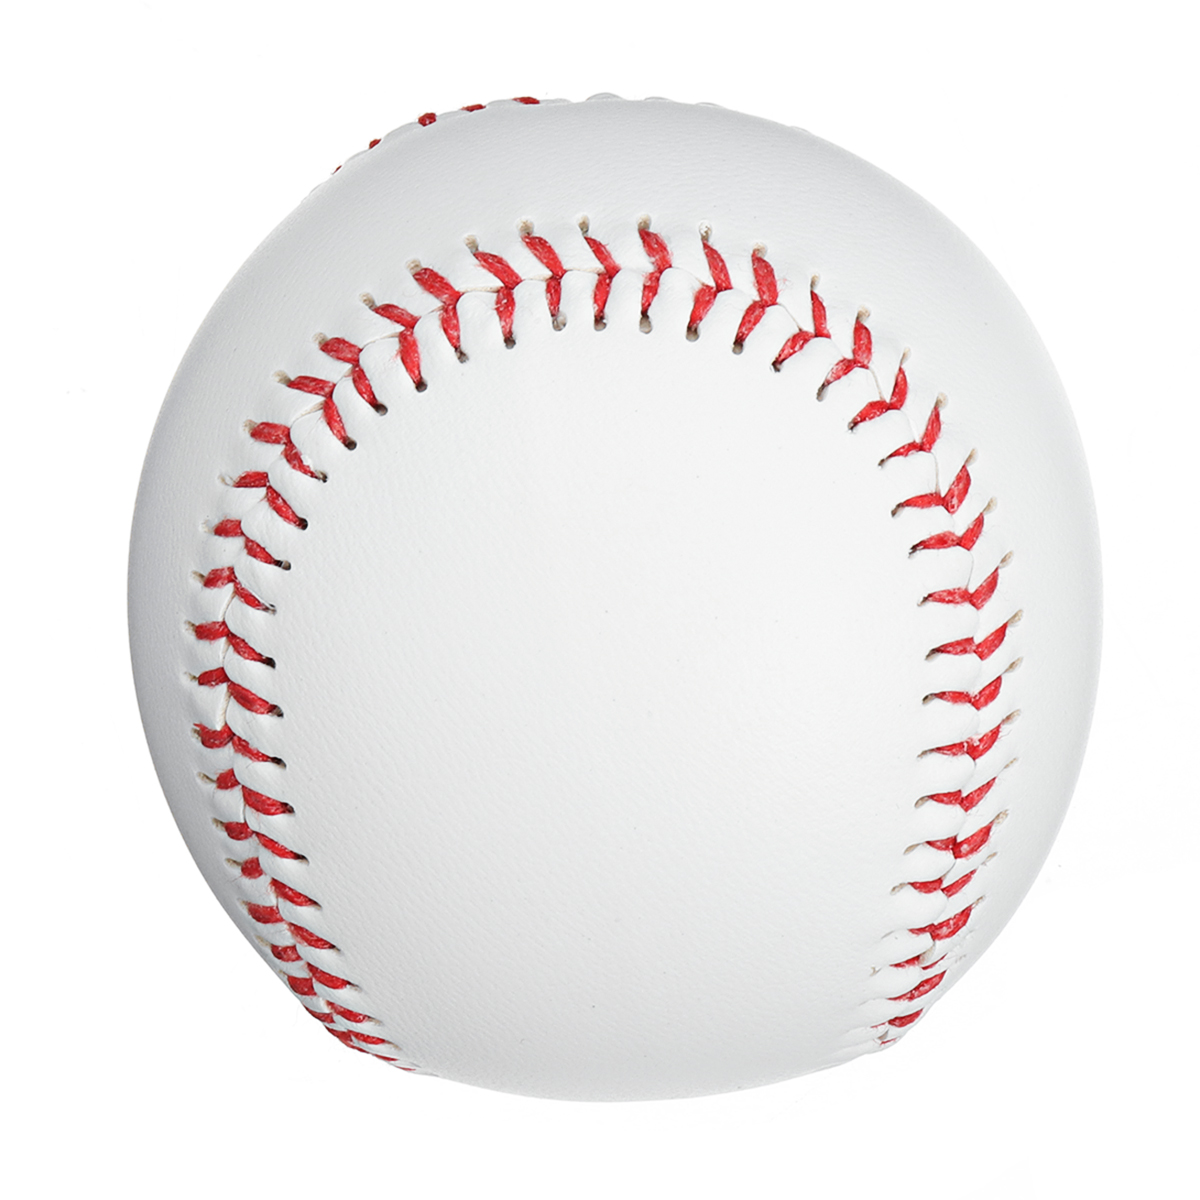 Other Sport & Leisure - 7cm Baseballs PVC Rubber Soft Baseball Balls ...